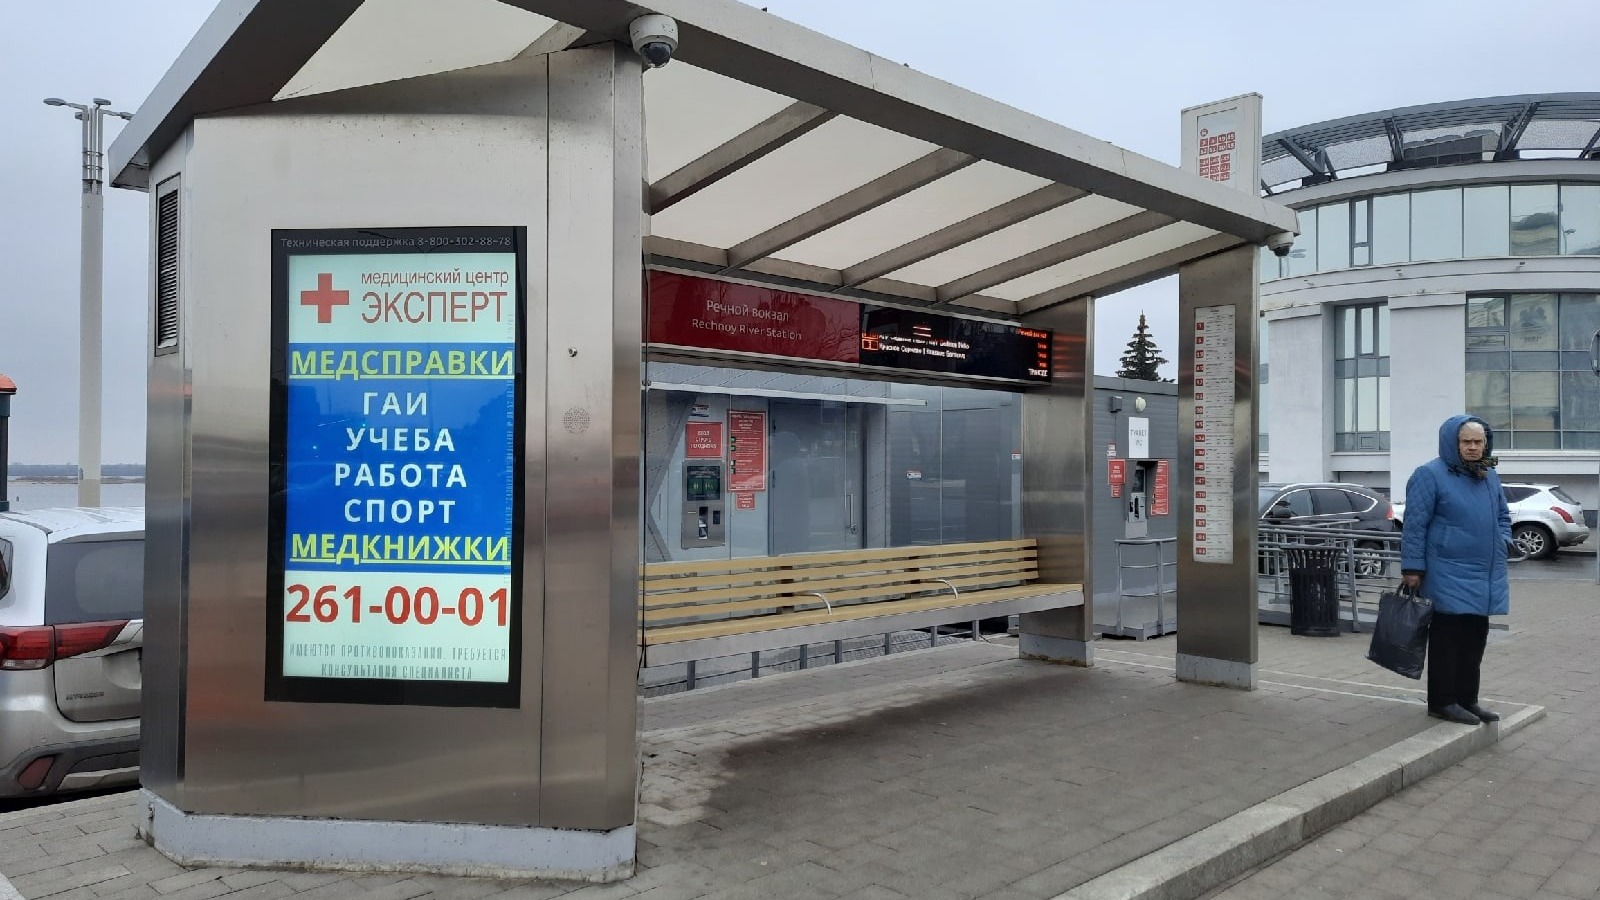 100% автобусов в Нижнем Новгороде подключены к навигационной системе